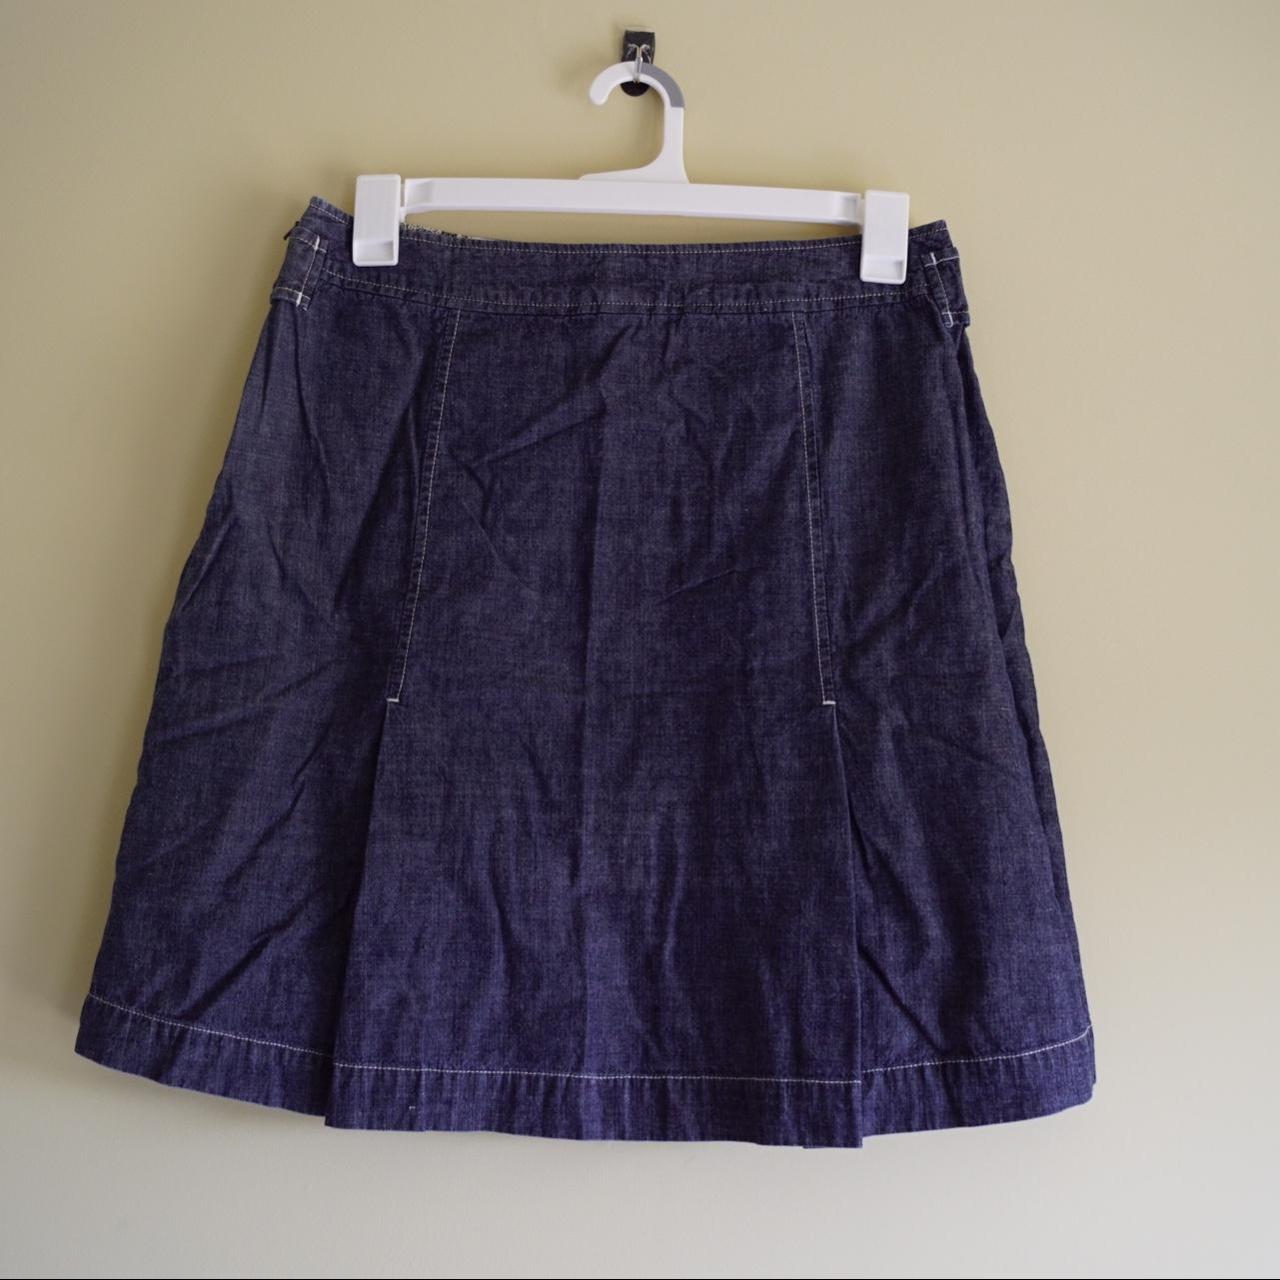 J. Jill Denim Pleated Skirt with iridescent Buttons... - Depop